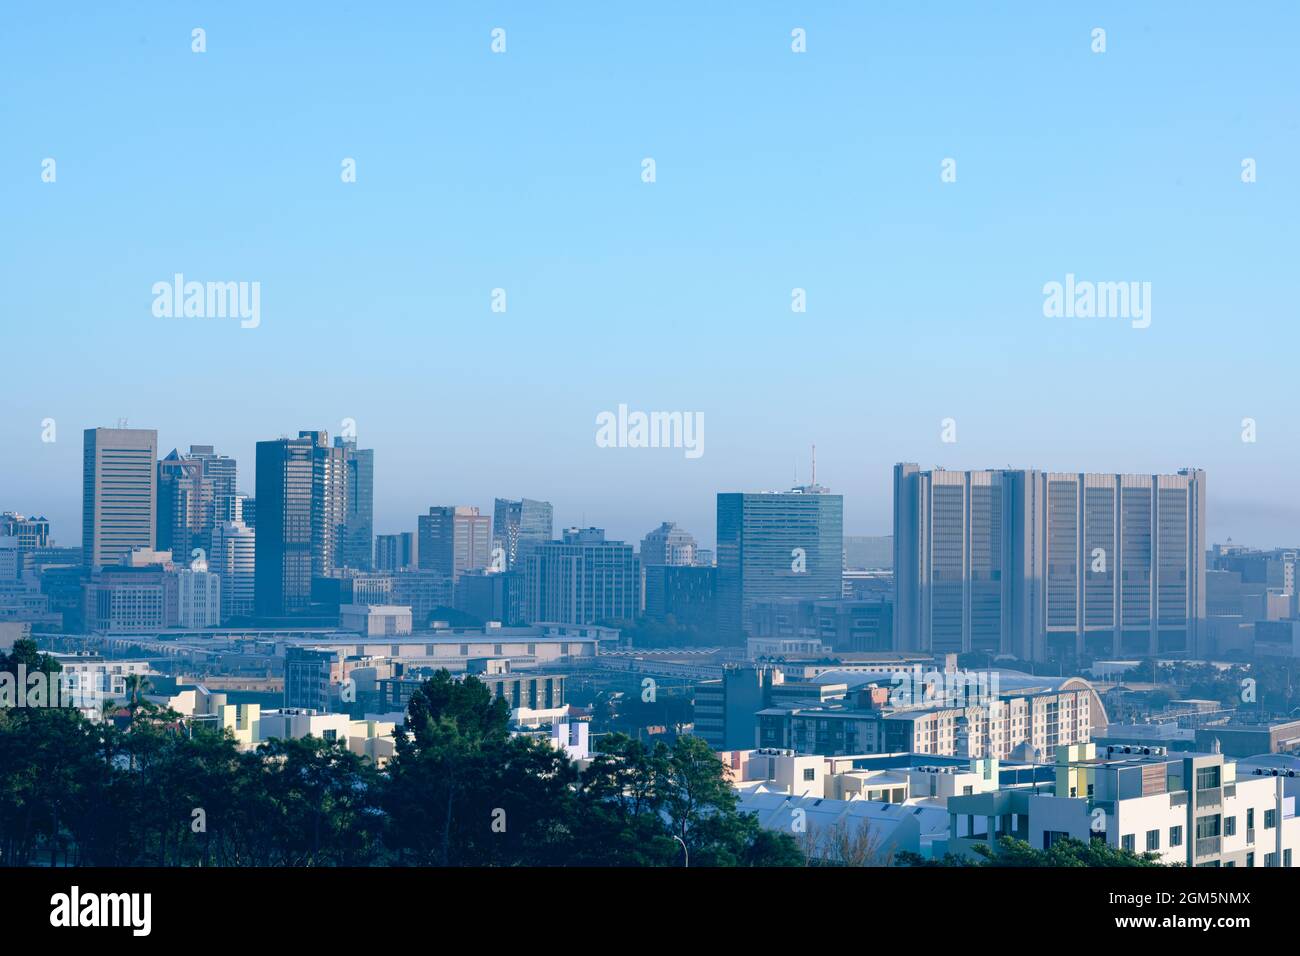 Vue générale sur le paysage urbain avec plusieurs bâtiments modernes et gratte-ciel le matin Banque D'Images